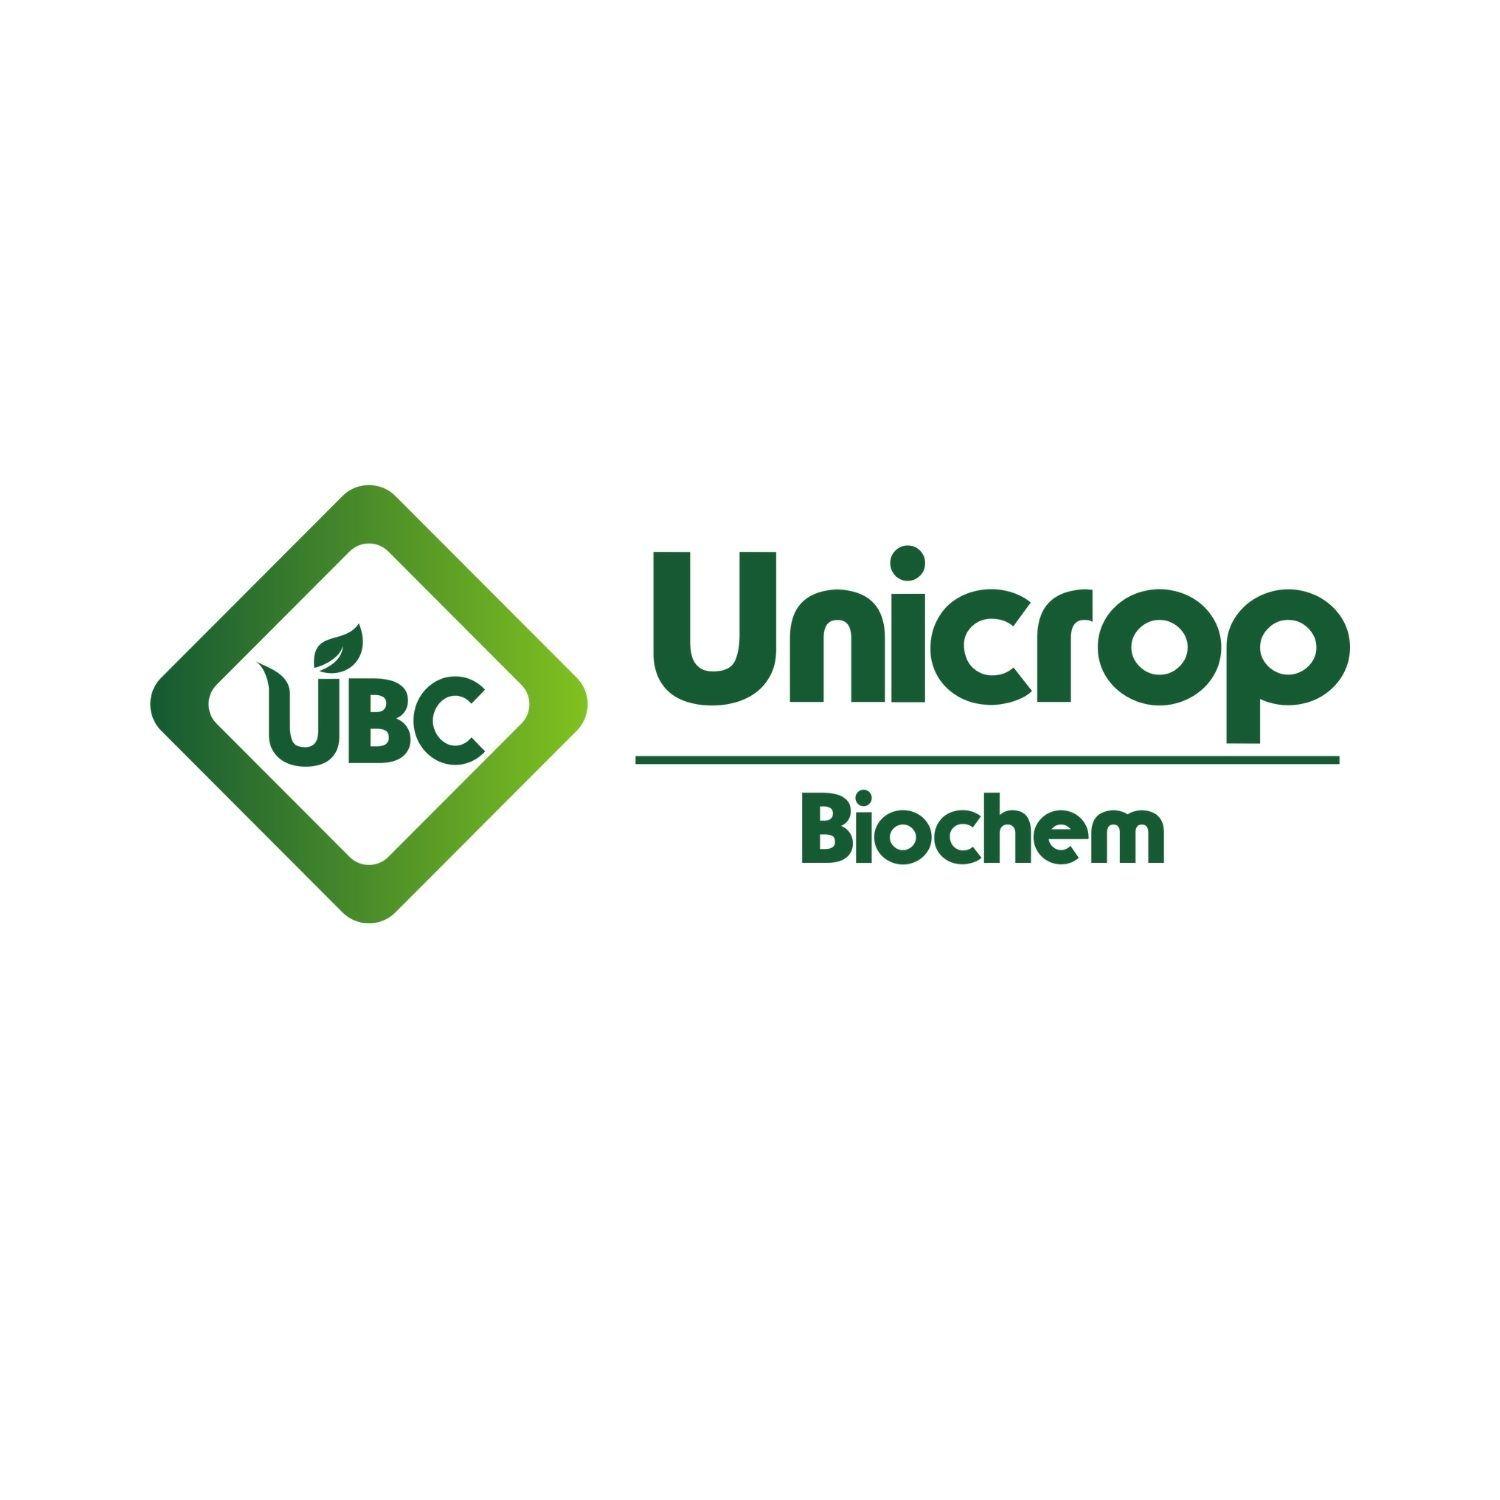 Unicrop Biochem